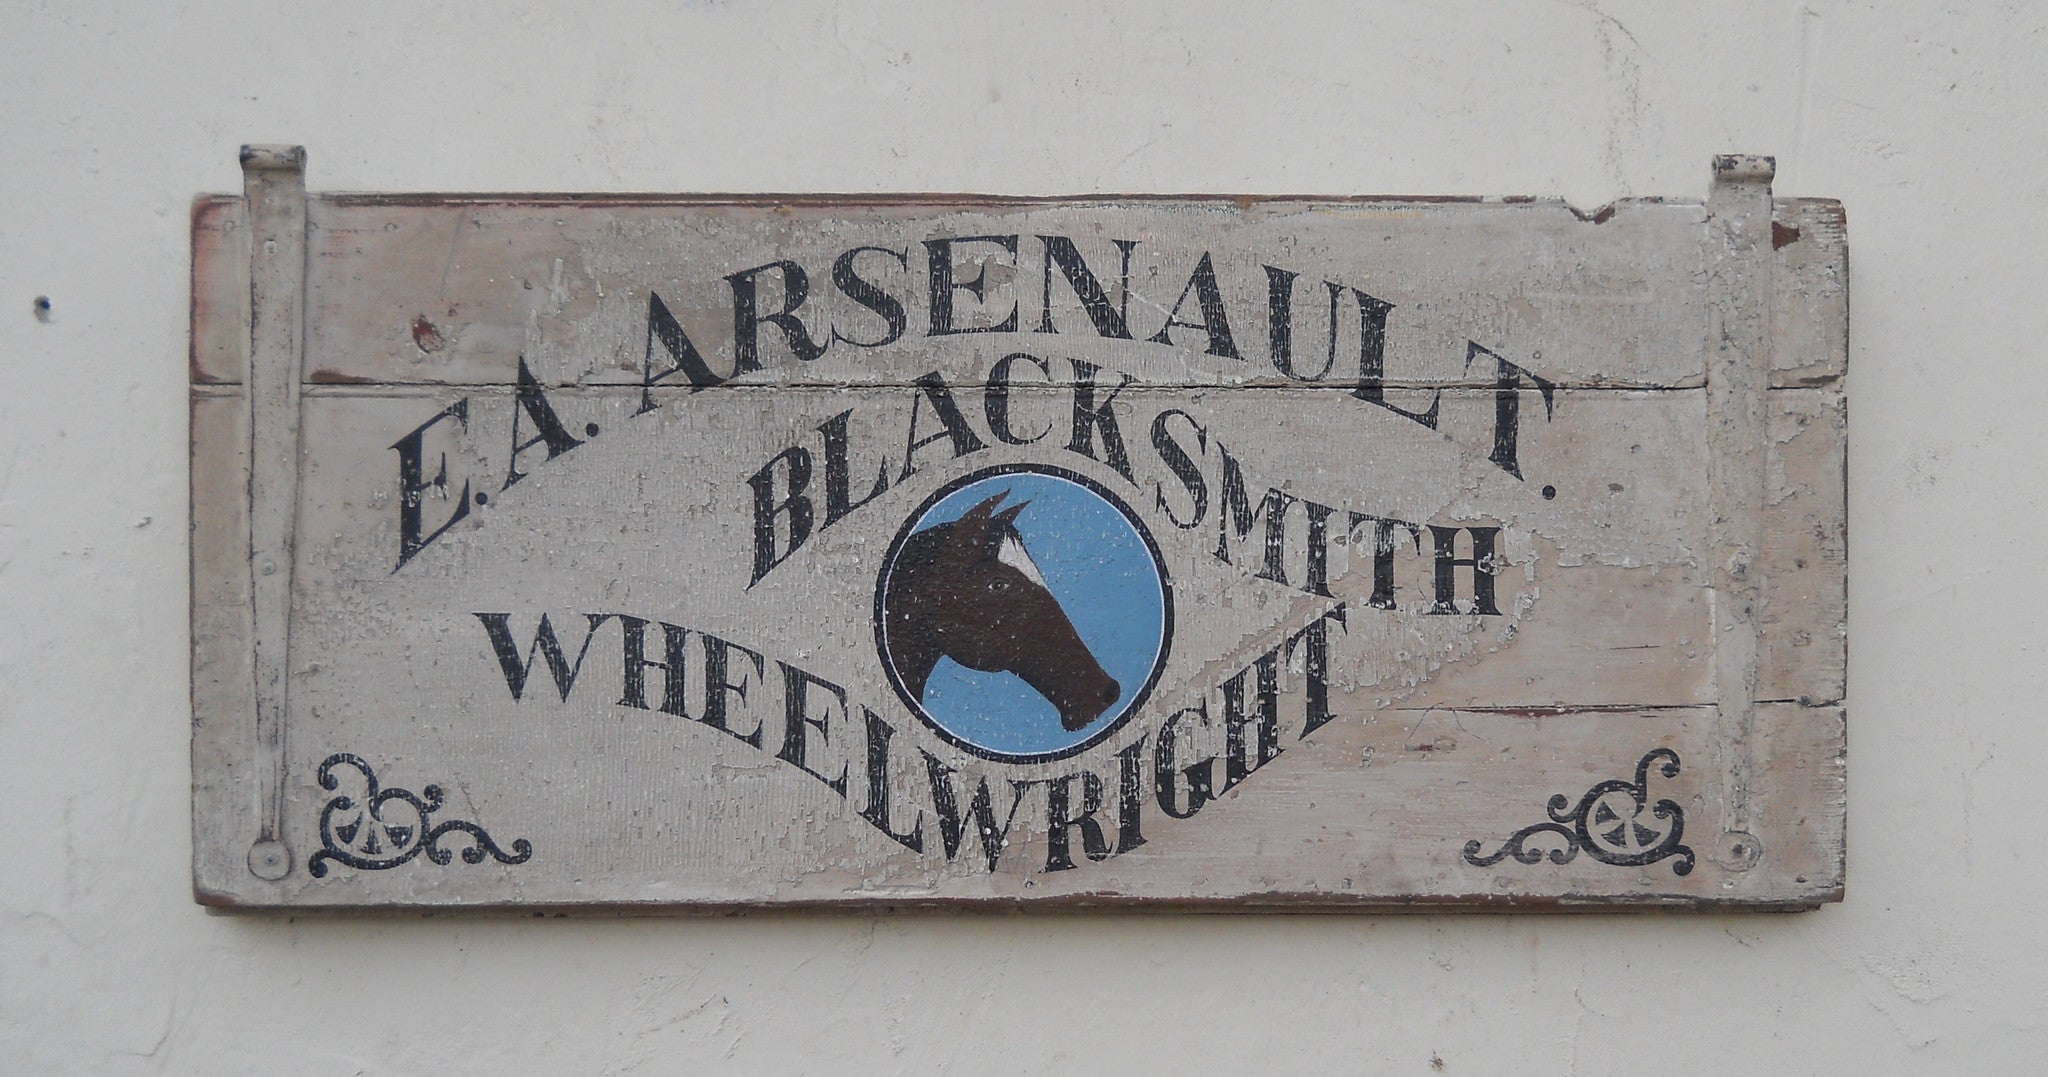 Arsenault Blacksmith